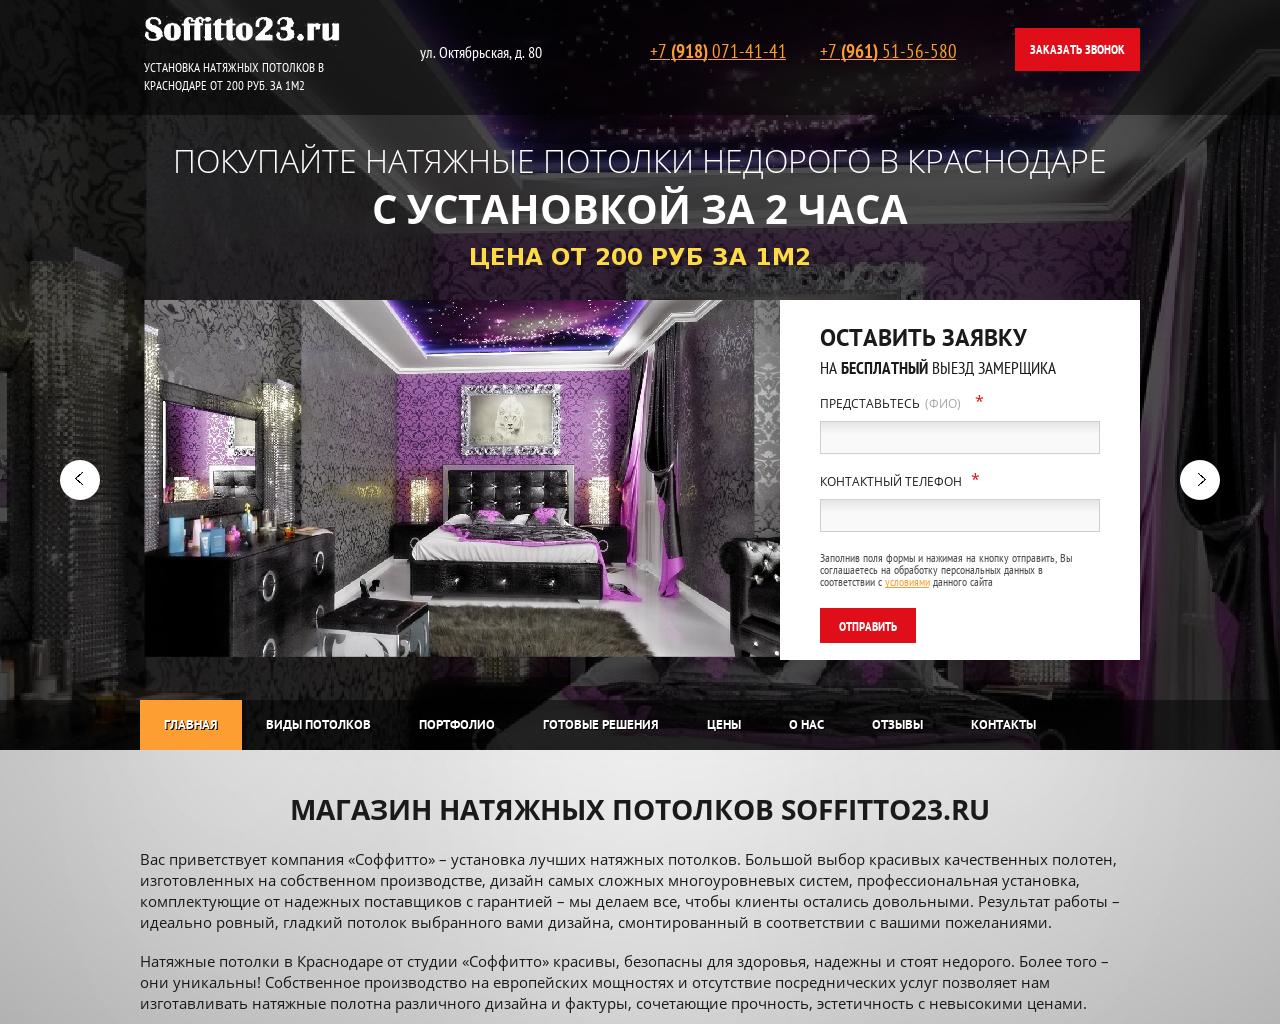 Изображение сайта soffitto23.ru в разрешении 1280x1024